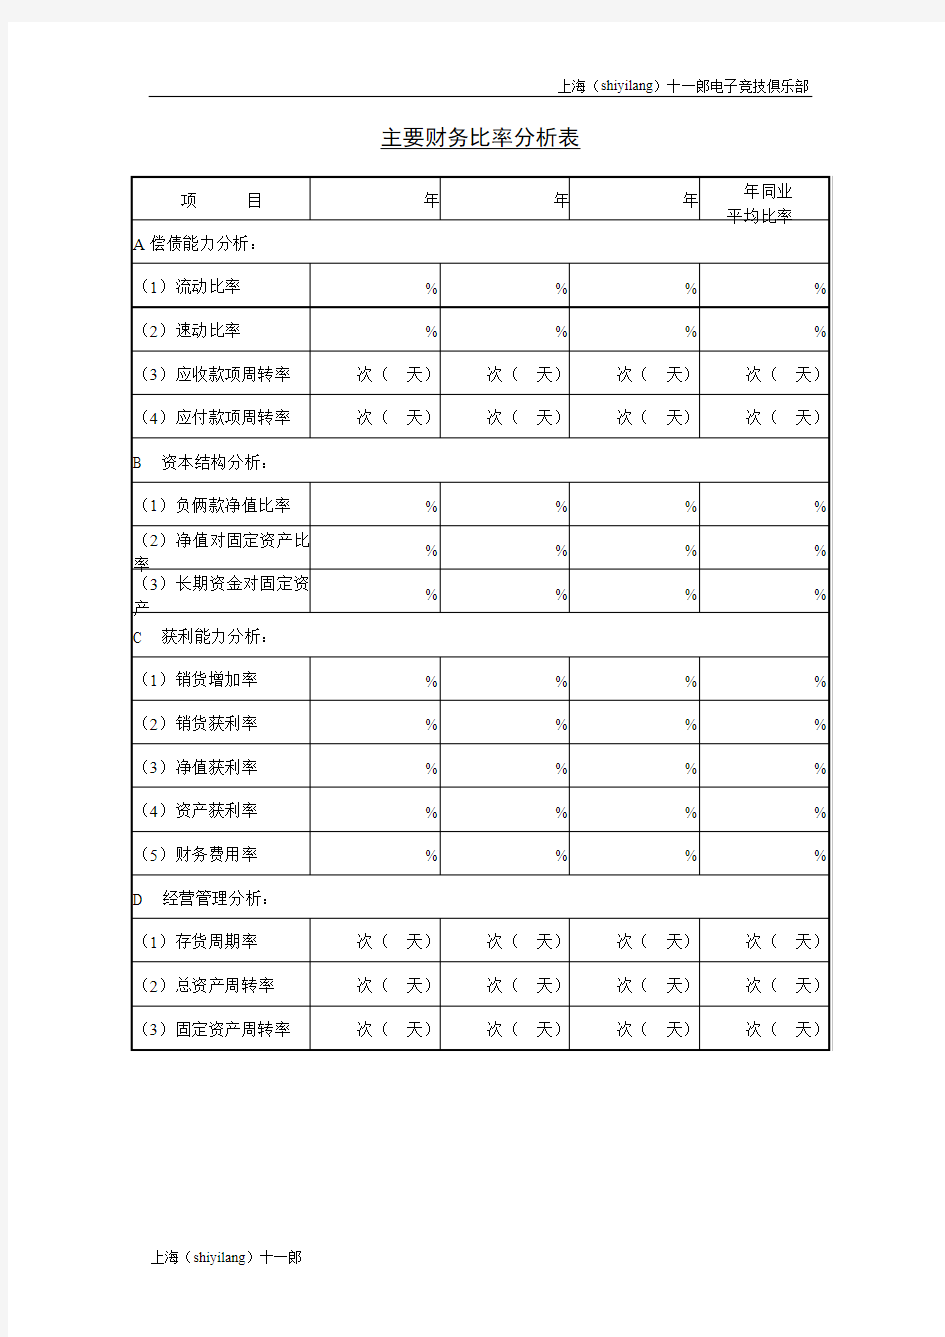 上海十一郎电子竞技俱乐部主要财务比率分析表